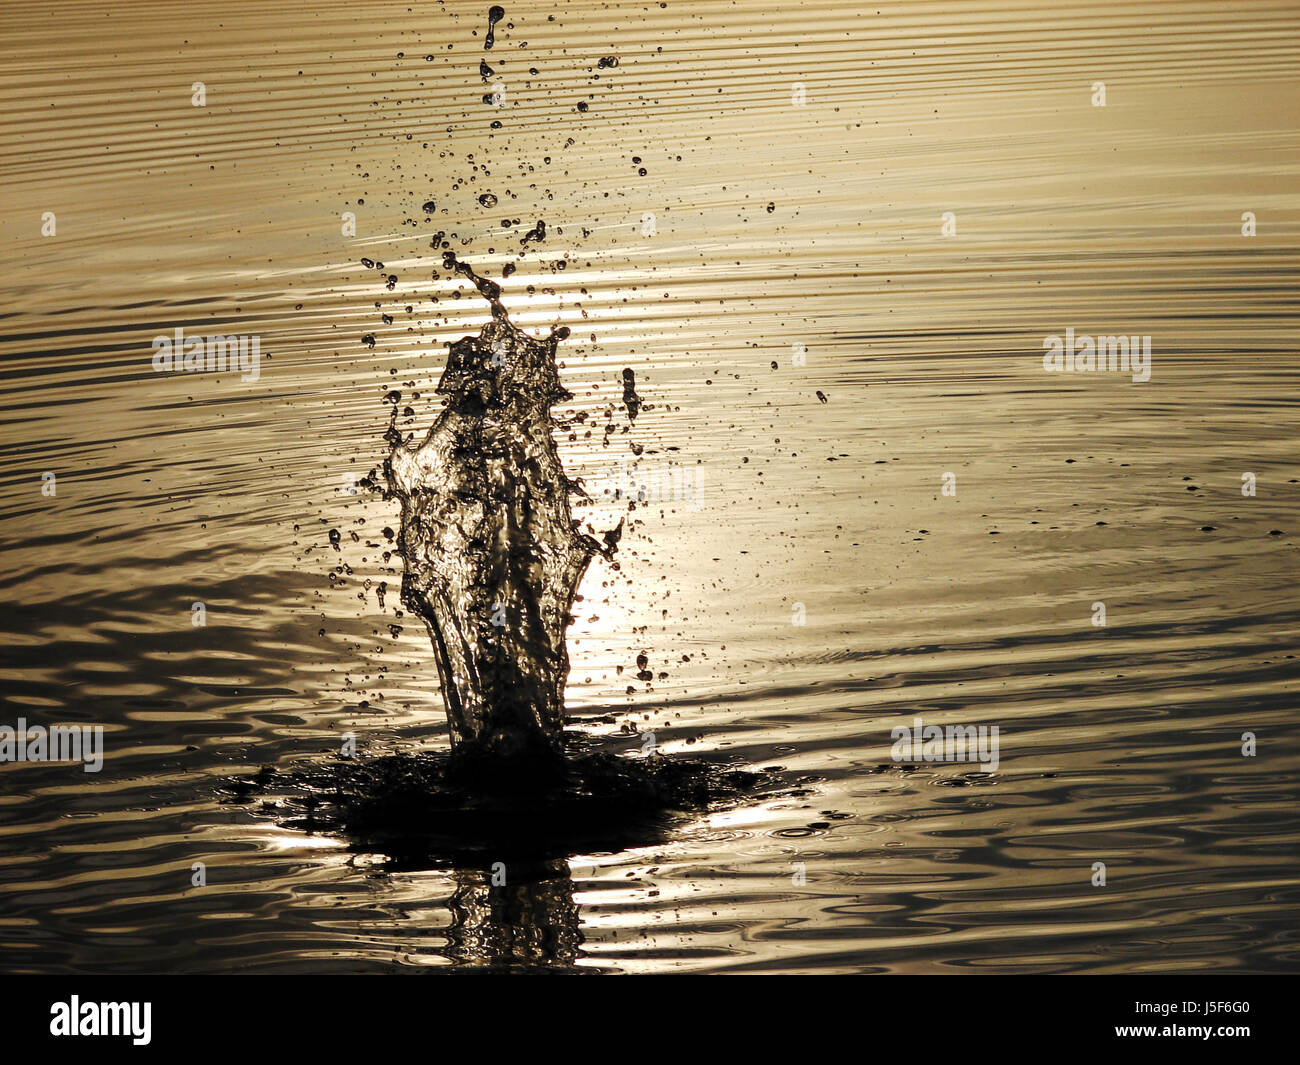 stone mirroring squirt dash setting sun fresh water lake inland water water Stock Photo